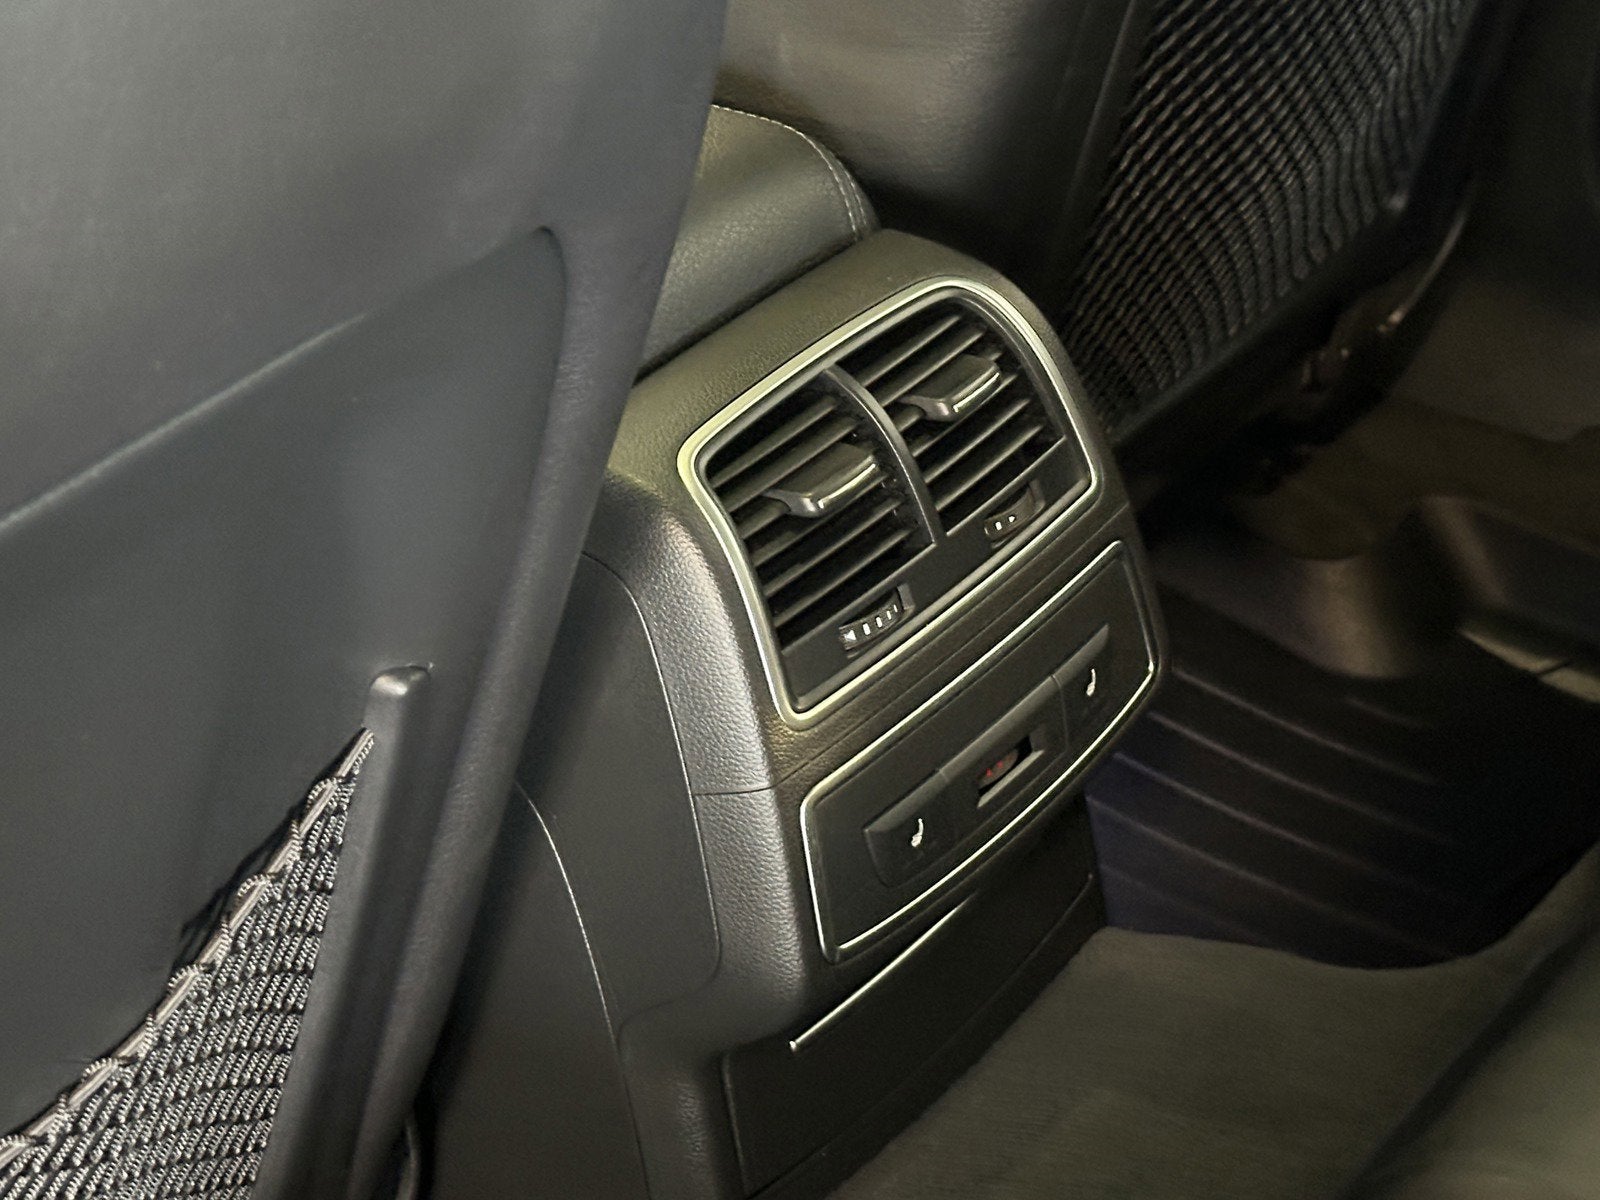 2012 Audi A7 3.0 Premium Plus